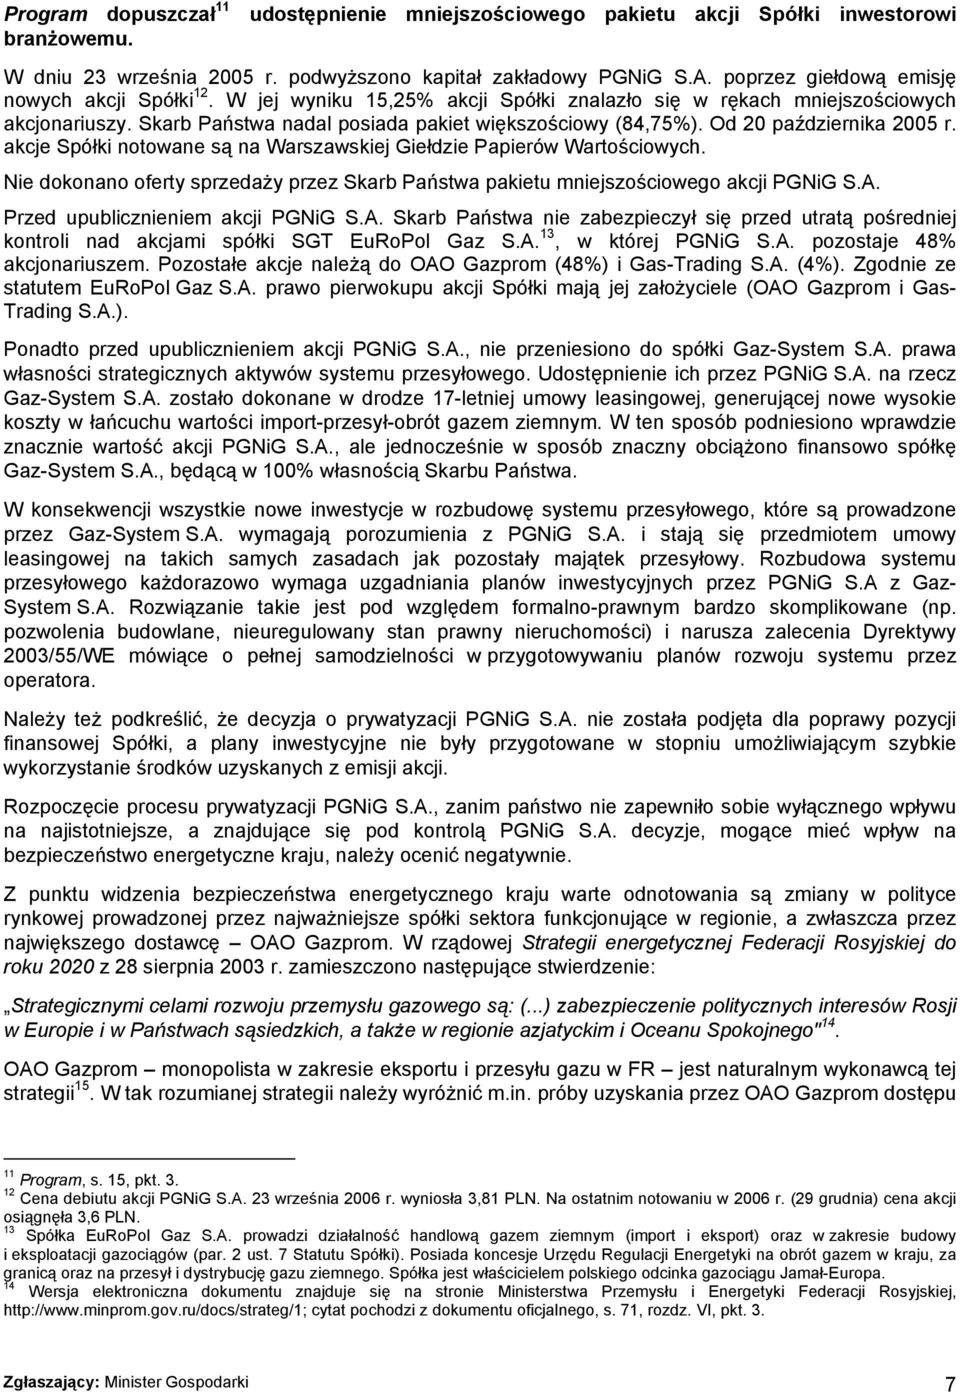 Od 20 października 2005 r. akcje Spółki notowane są na Warszawskiej Giełdzie Papierów Wartościowych. Nie dokonano oferty sprzedaży przez Skarb Państwa pakietu mniejszościowego akcji PGNiG S.A.